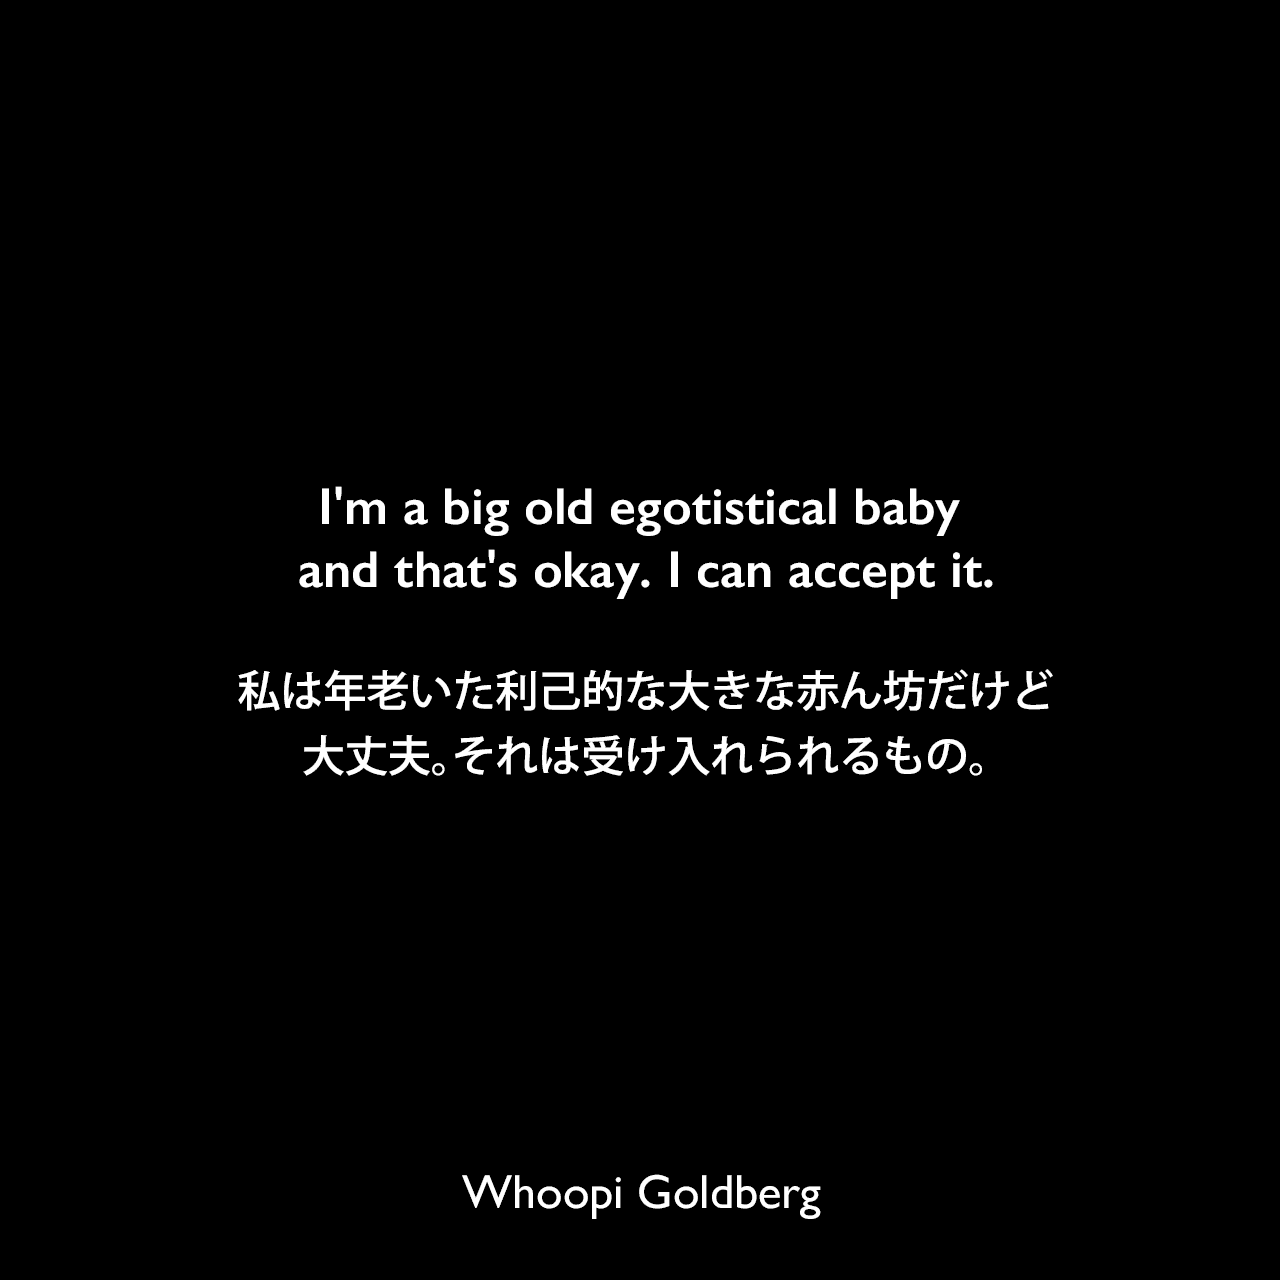 I'm a big old egotistical baby and that's okay. I can accept it.私は年老いた利己的な大きな赤ん坊だけど、大丈夫。それは受け入れられるもの。Whoopi Goldberg